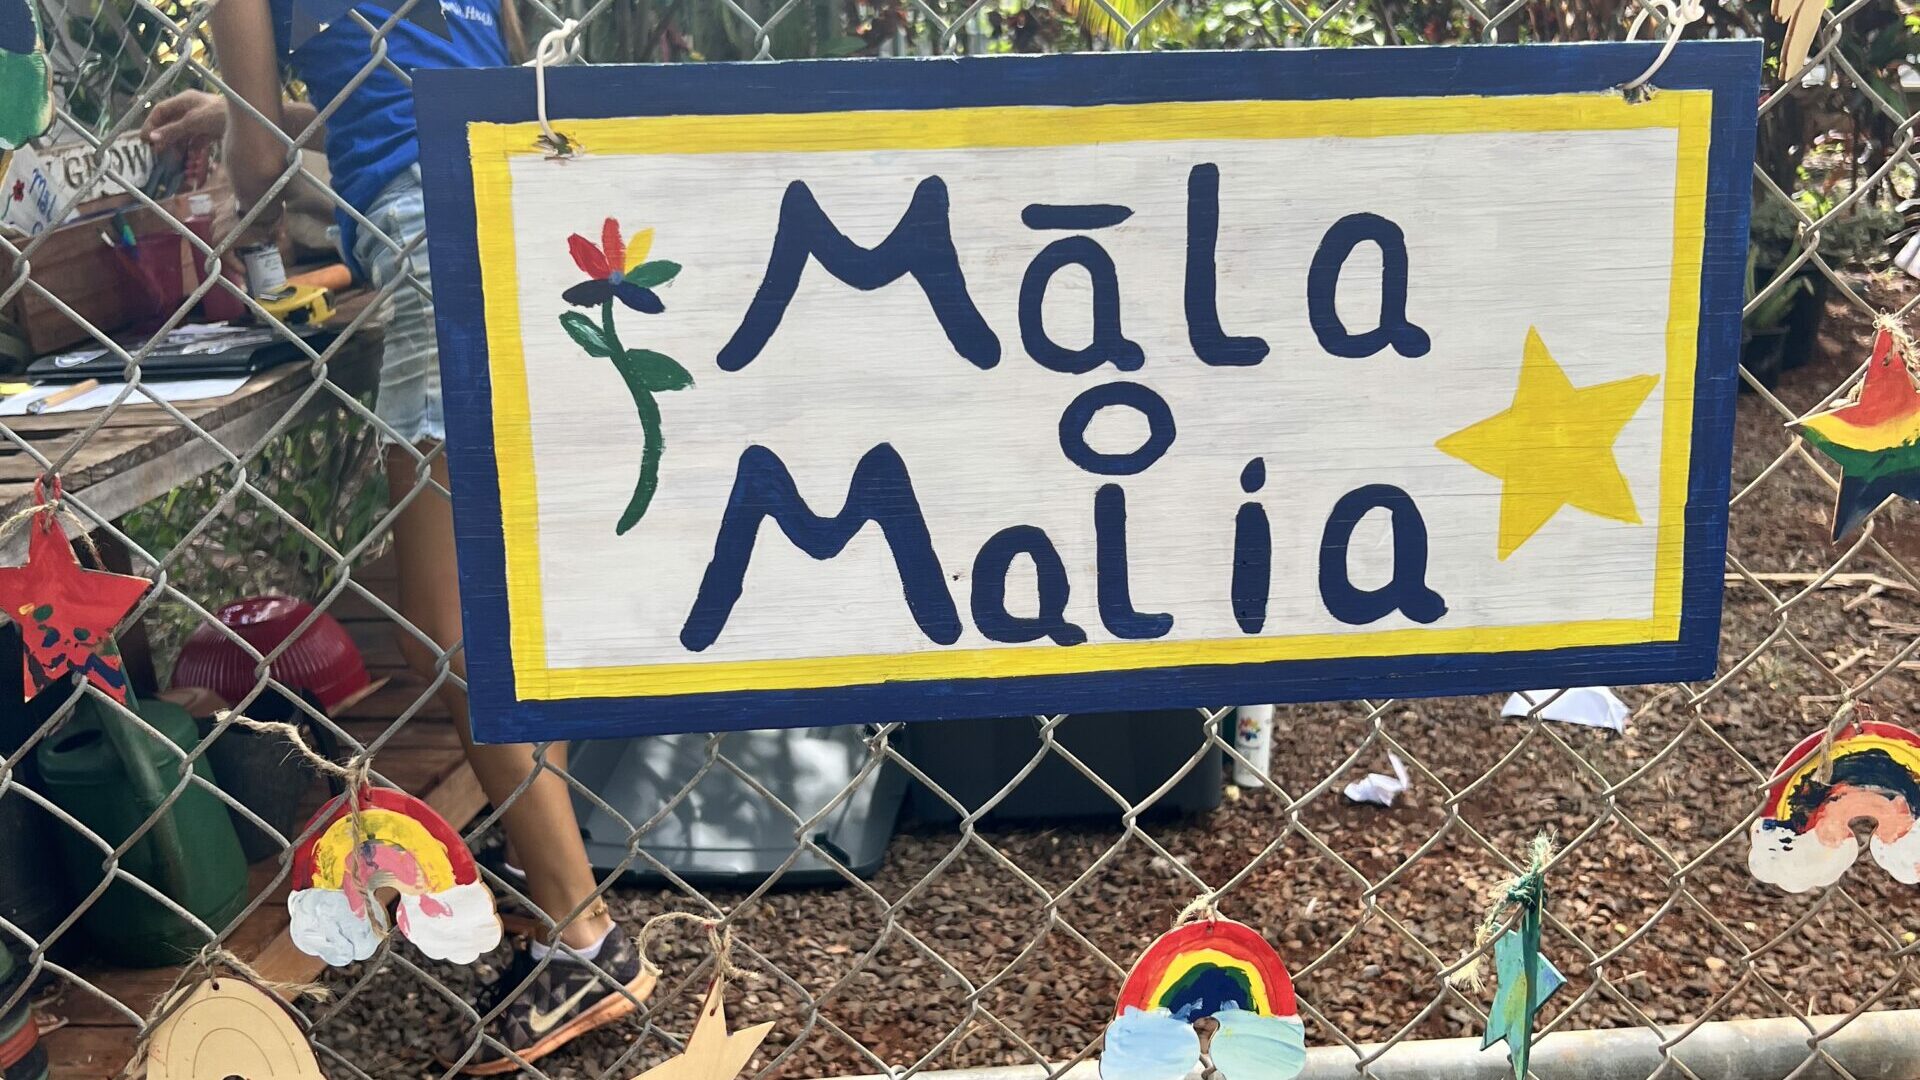 Welcome to our Mala o Malia